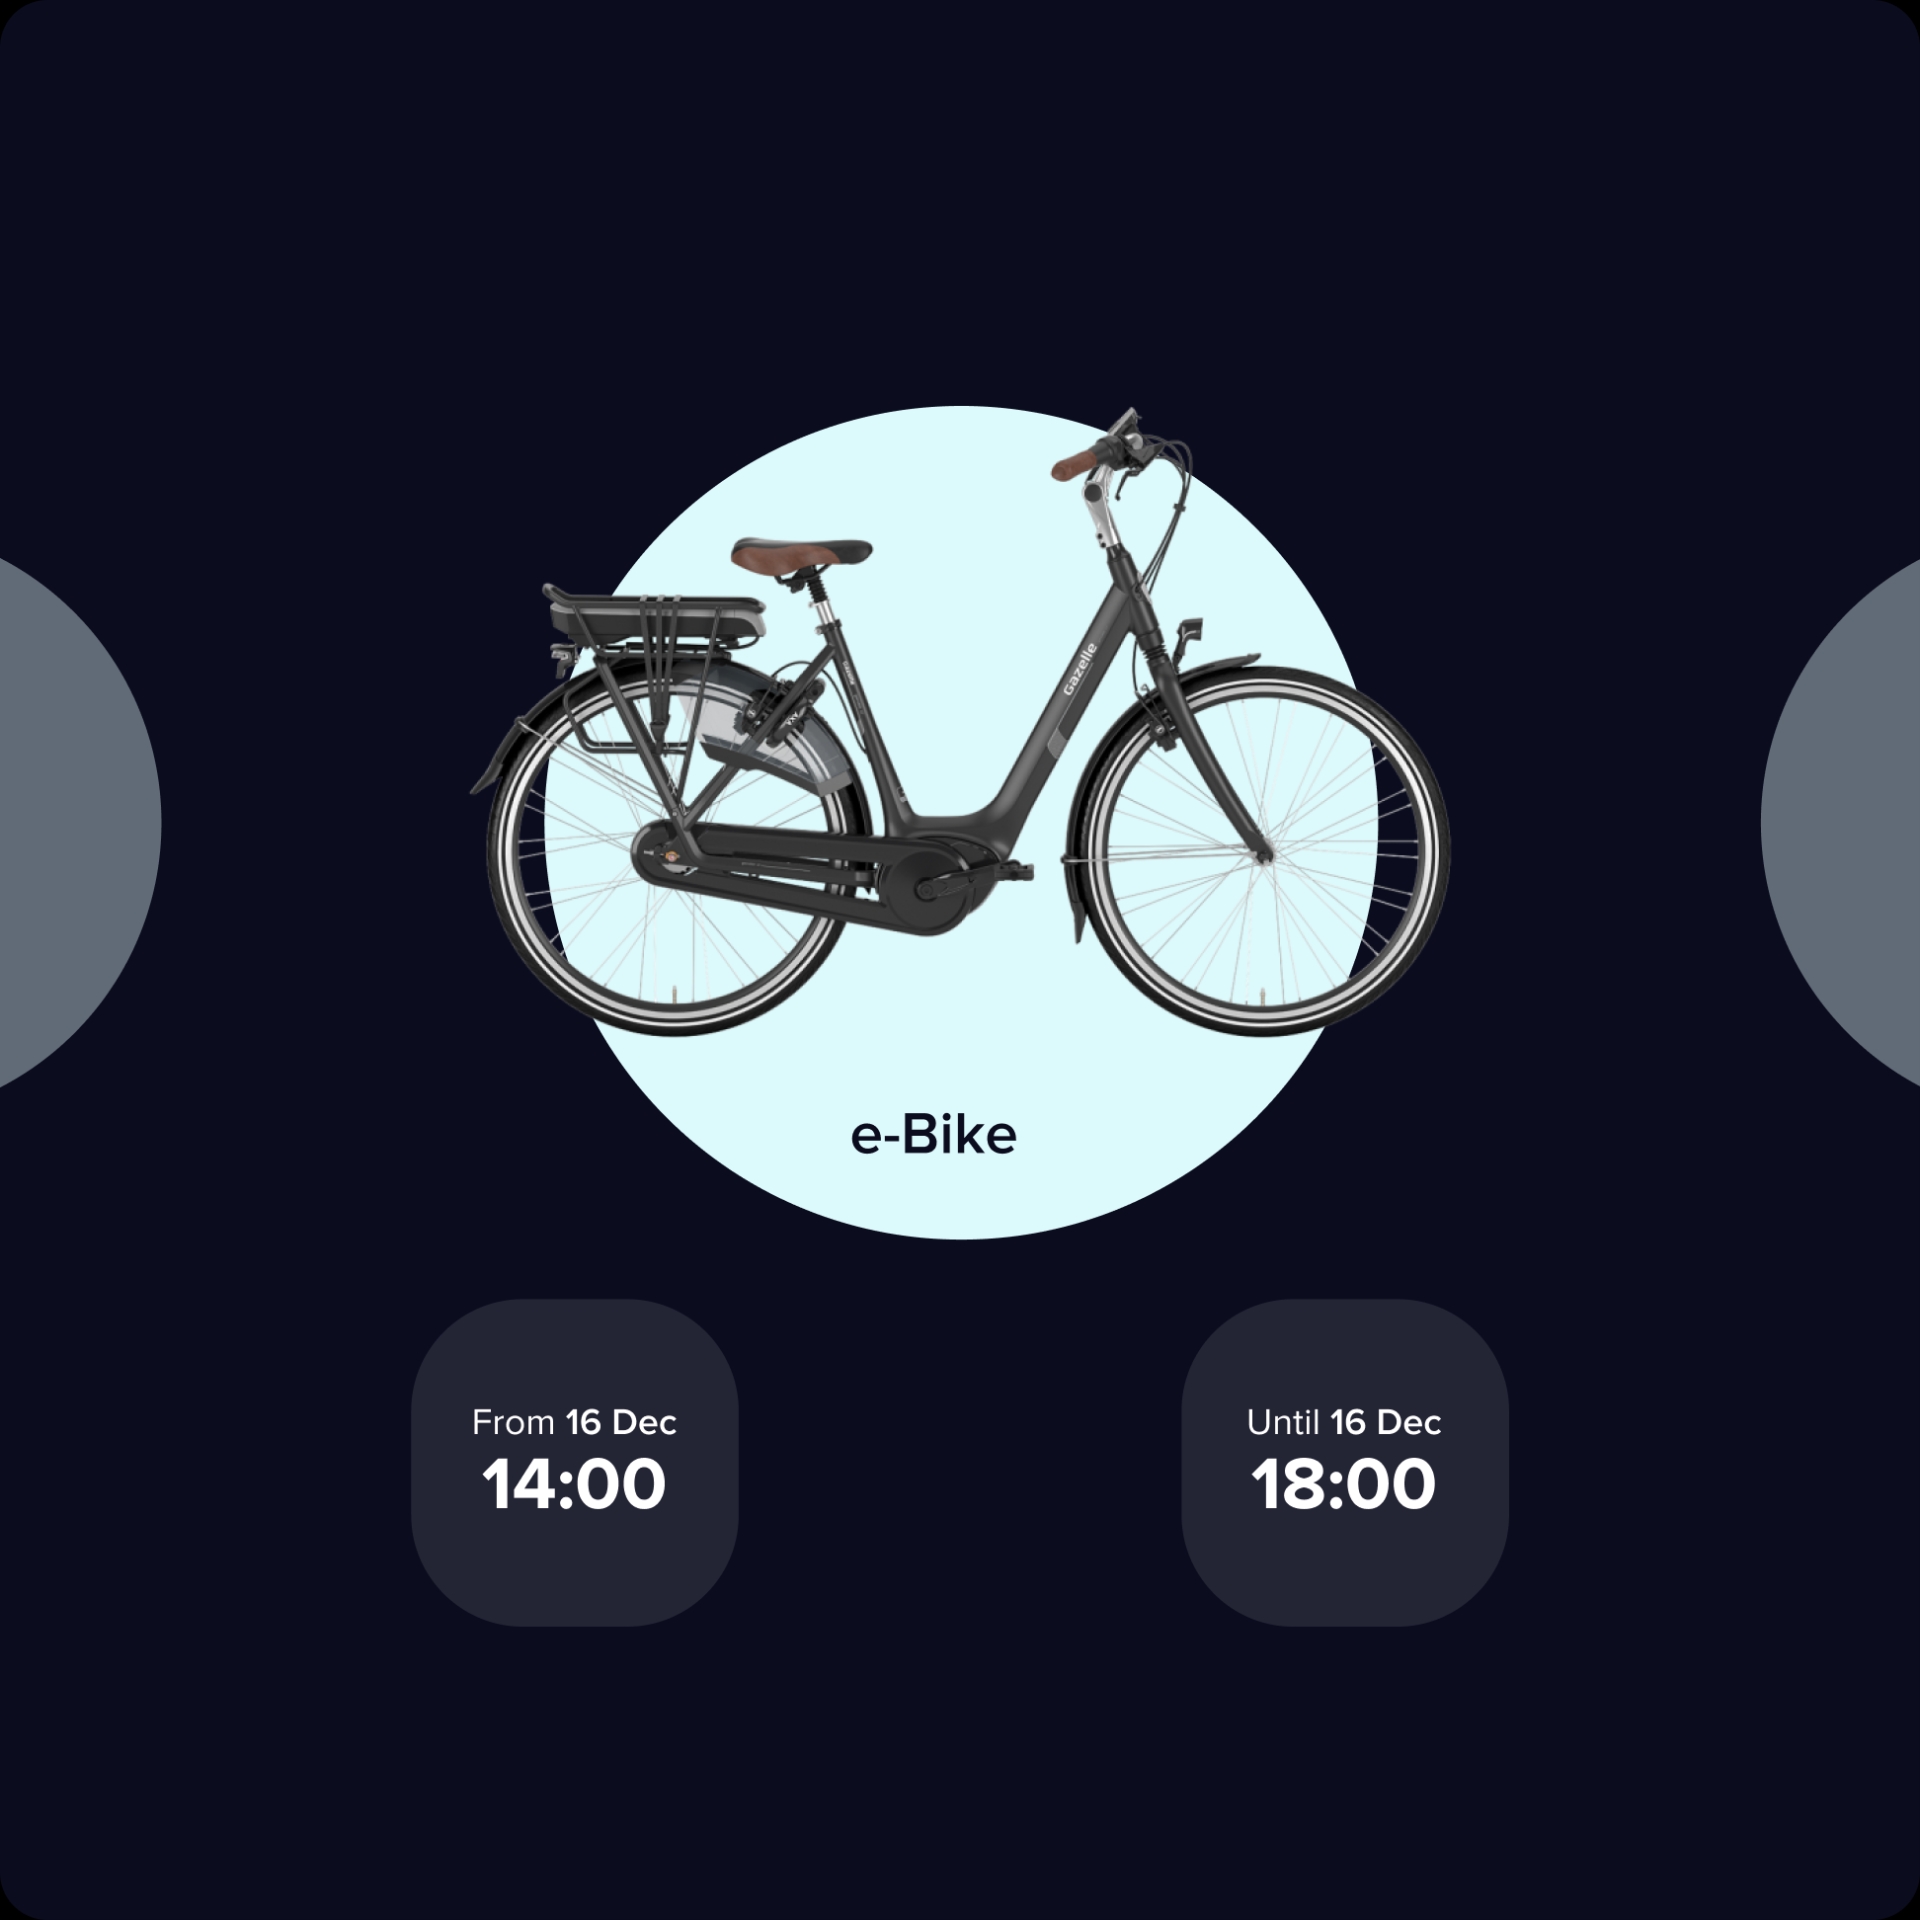 HUUB app mockup showing the bike reservation